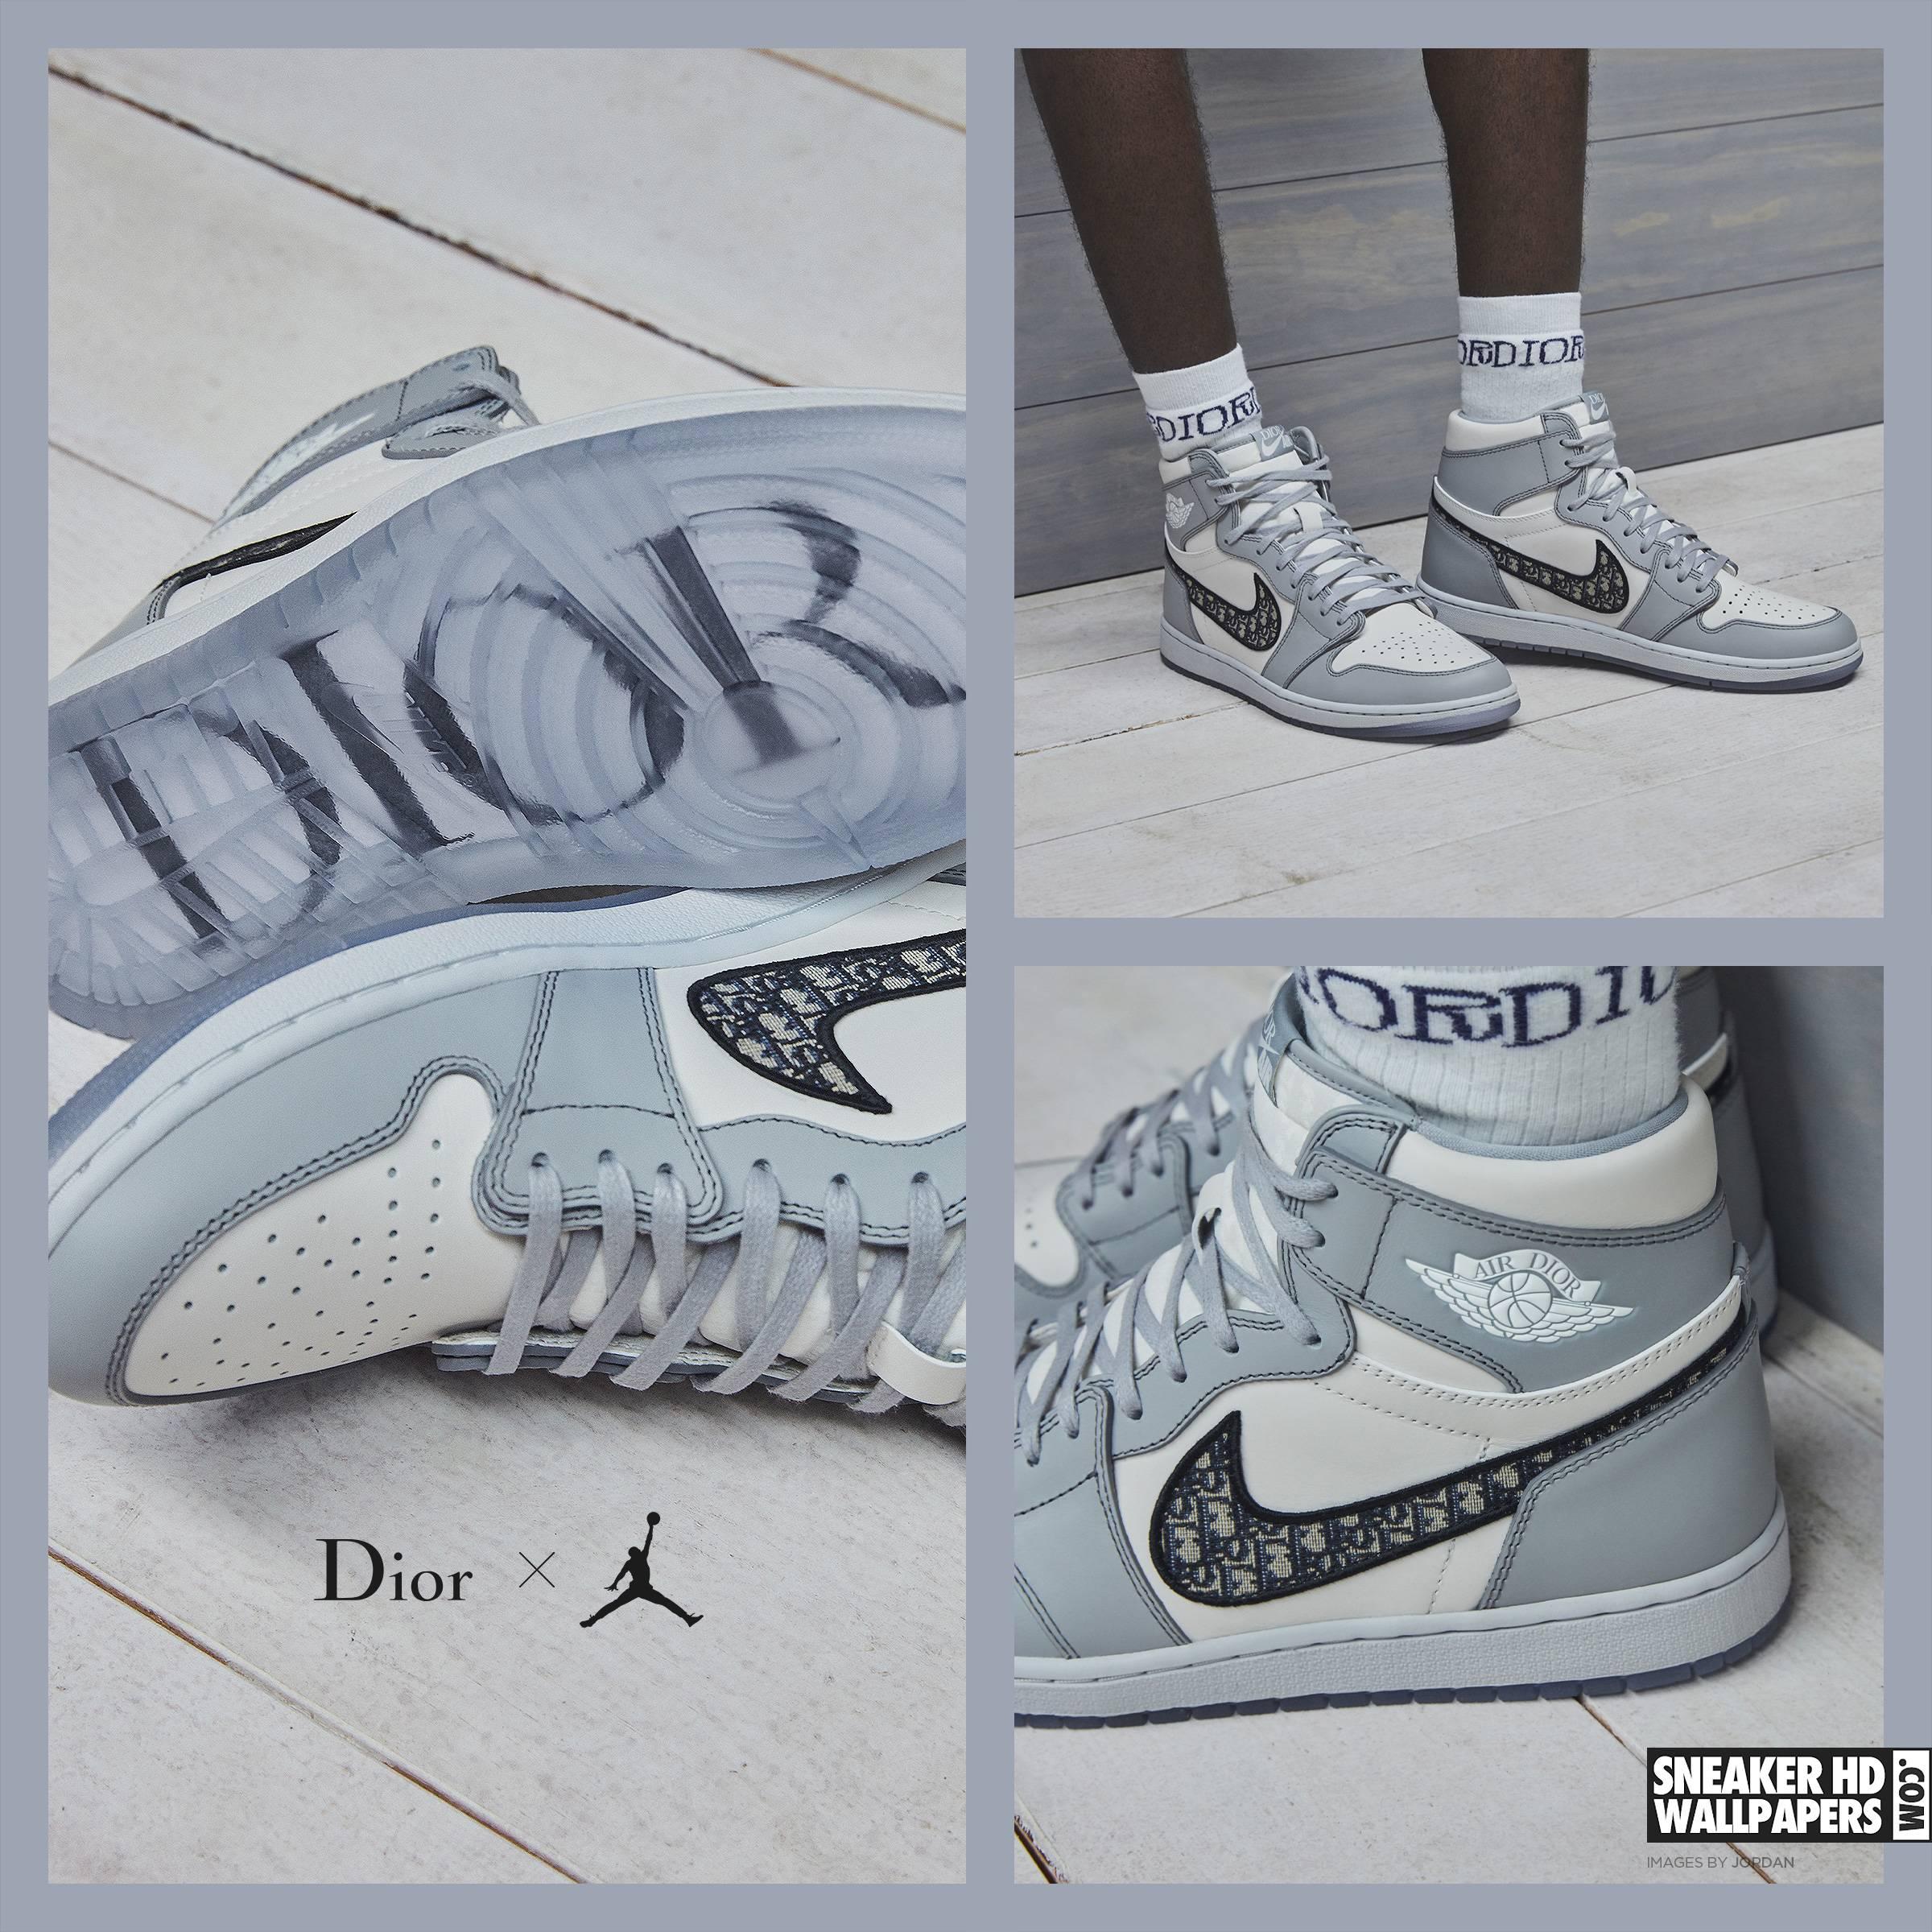 2400 x 2400 · jpeg - Nike Wallpaper Dior Logo - Sneakerhdwallpapers Com Your Favorite ...